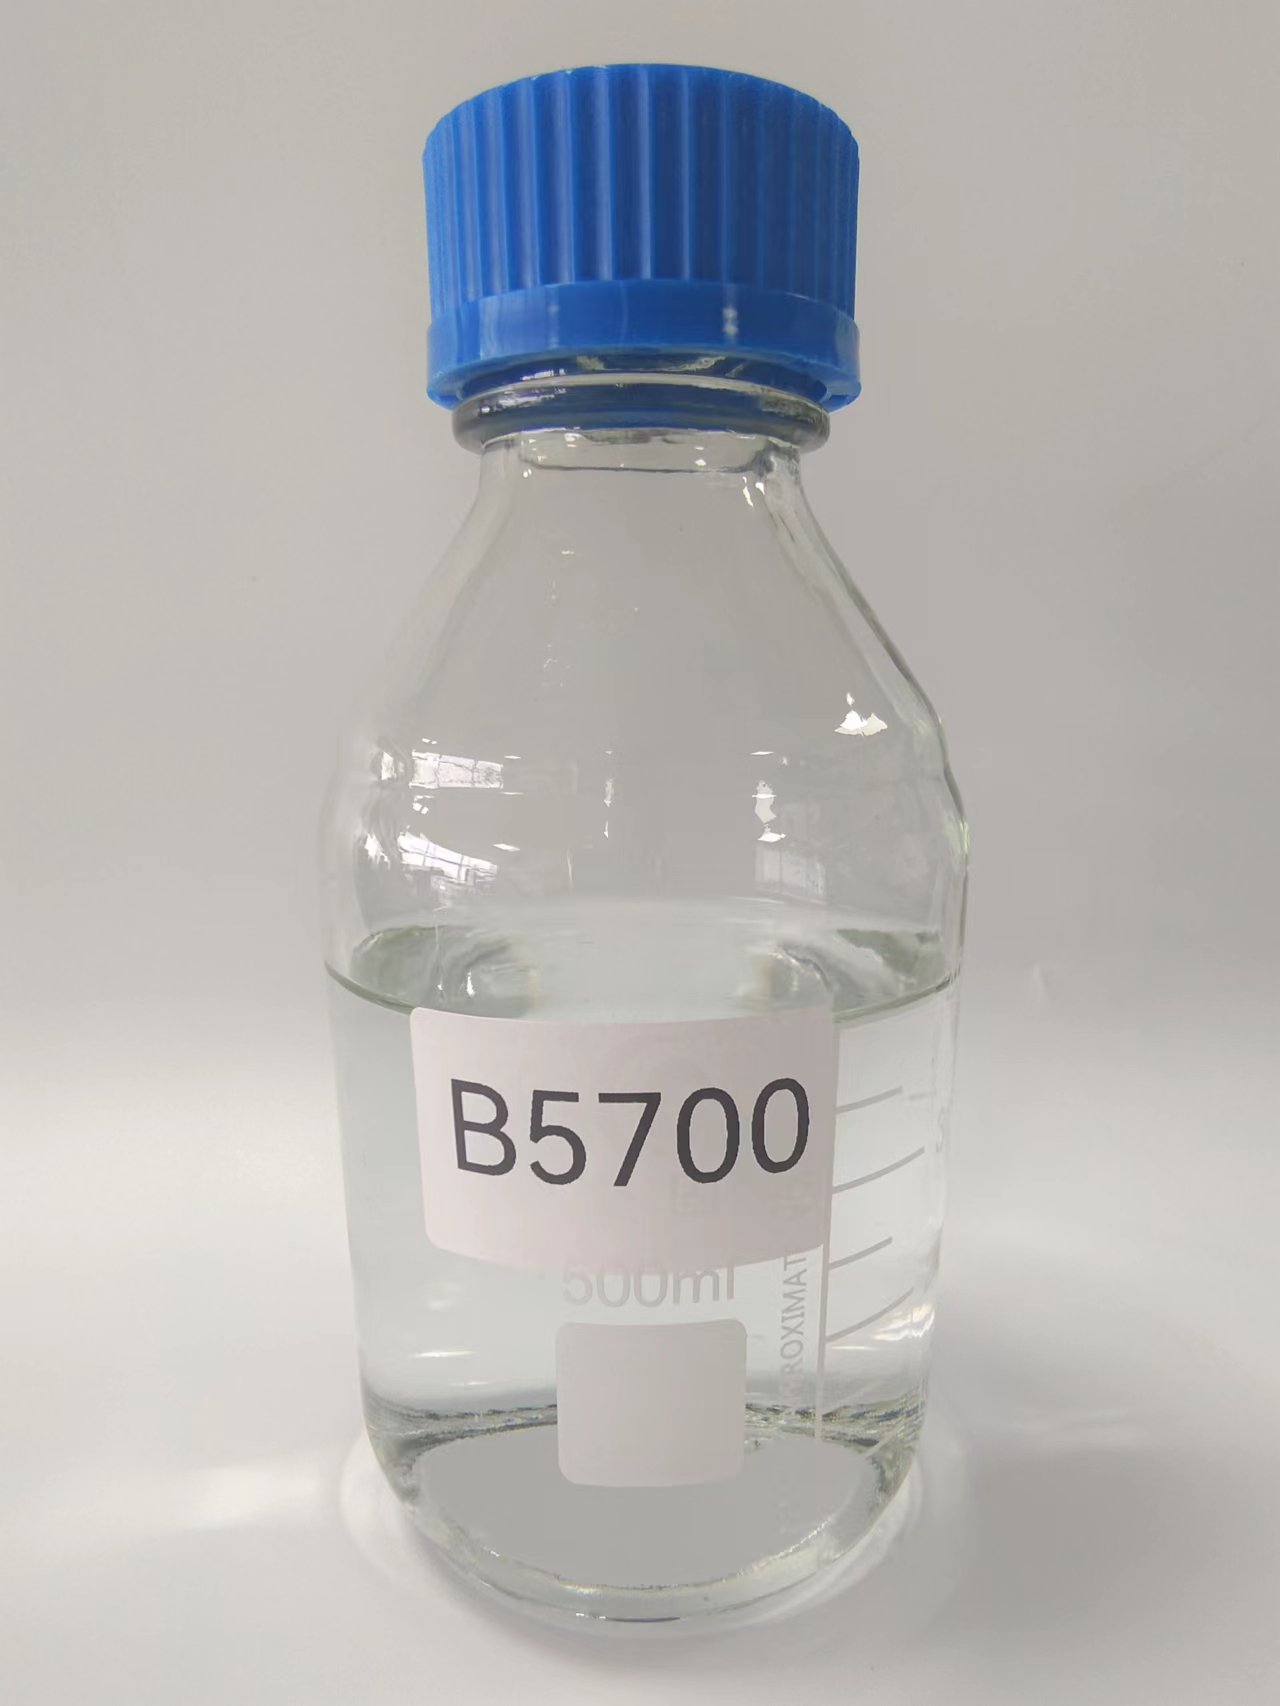 B5700 Silicone modified epoxy resin